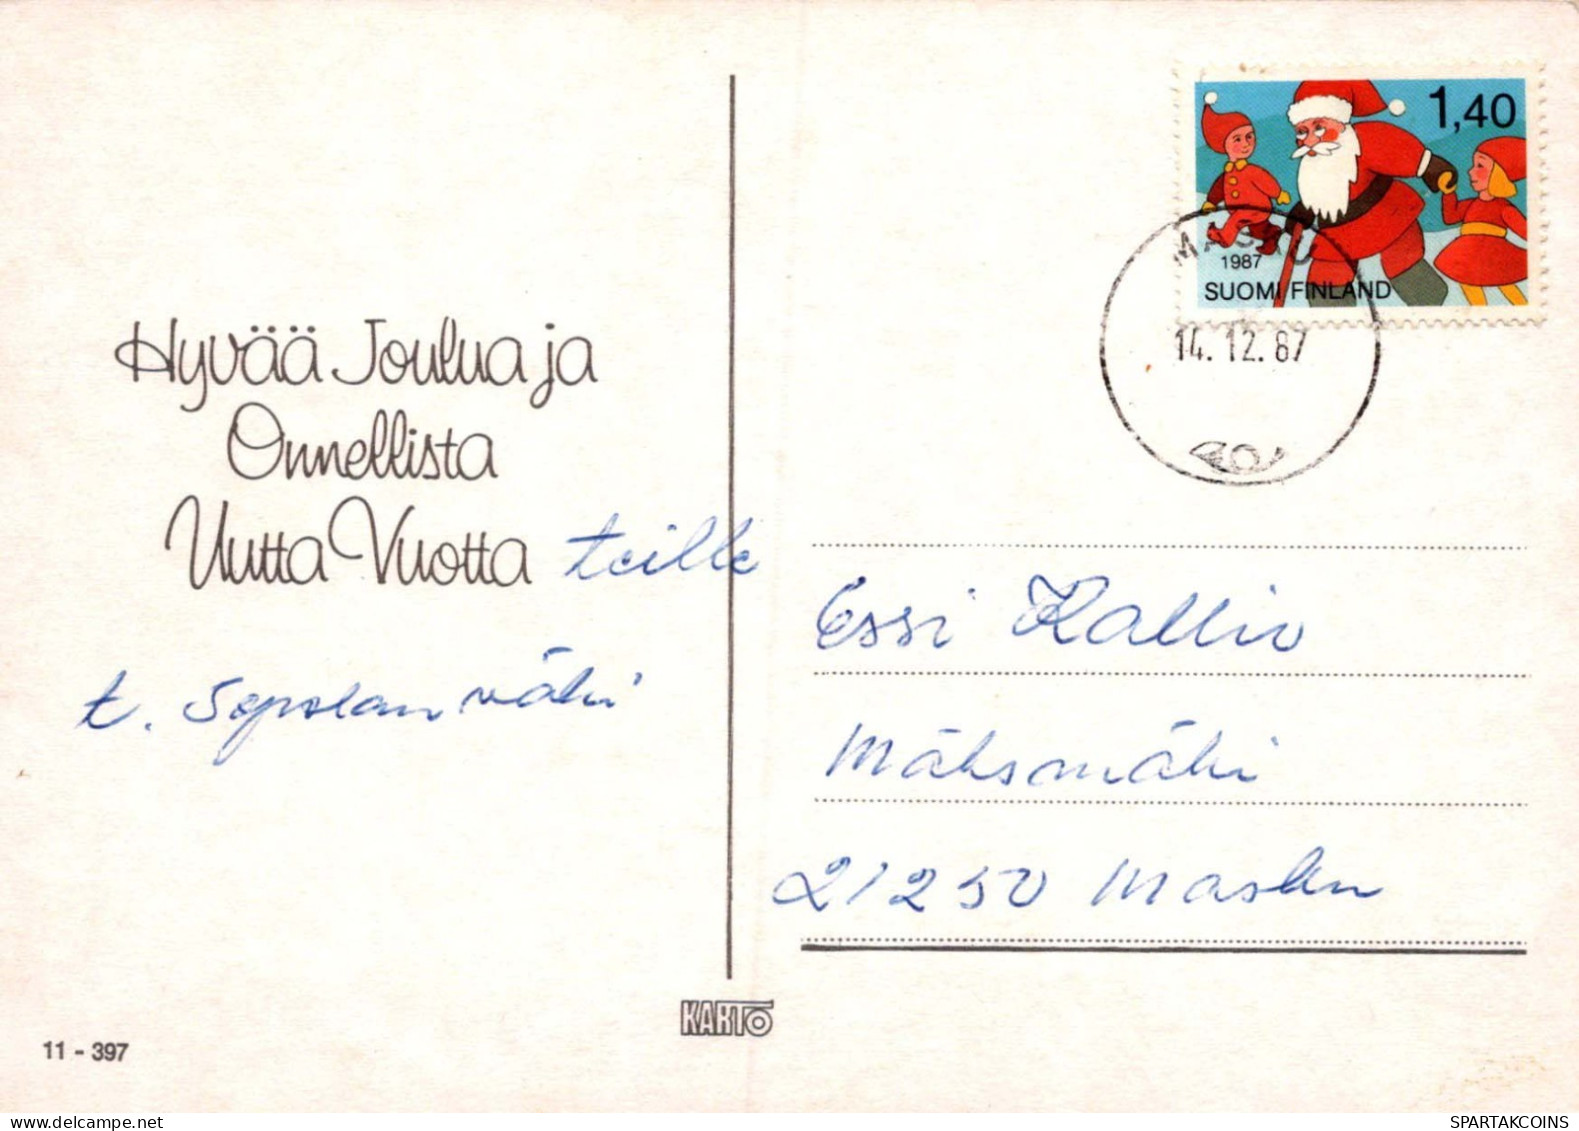 WEIHNACHTSMANN SANTA CLAUS Neujahr Weihnachten GNOME Vintage Ansichtskarte Postkarte CPSM #PAU435.A - Santa Claus